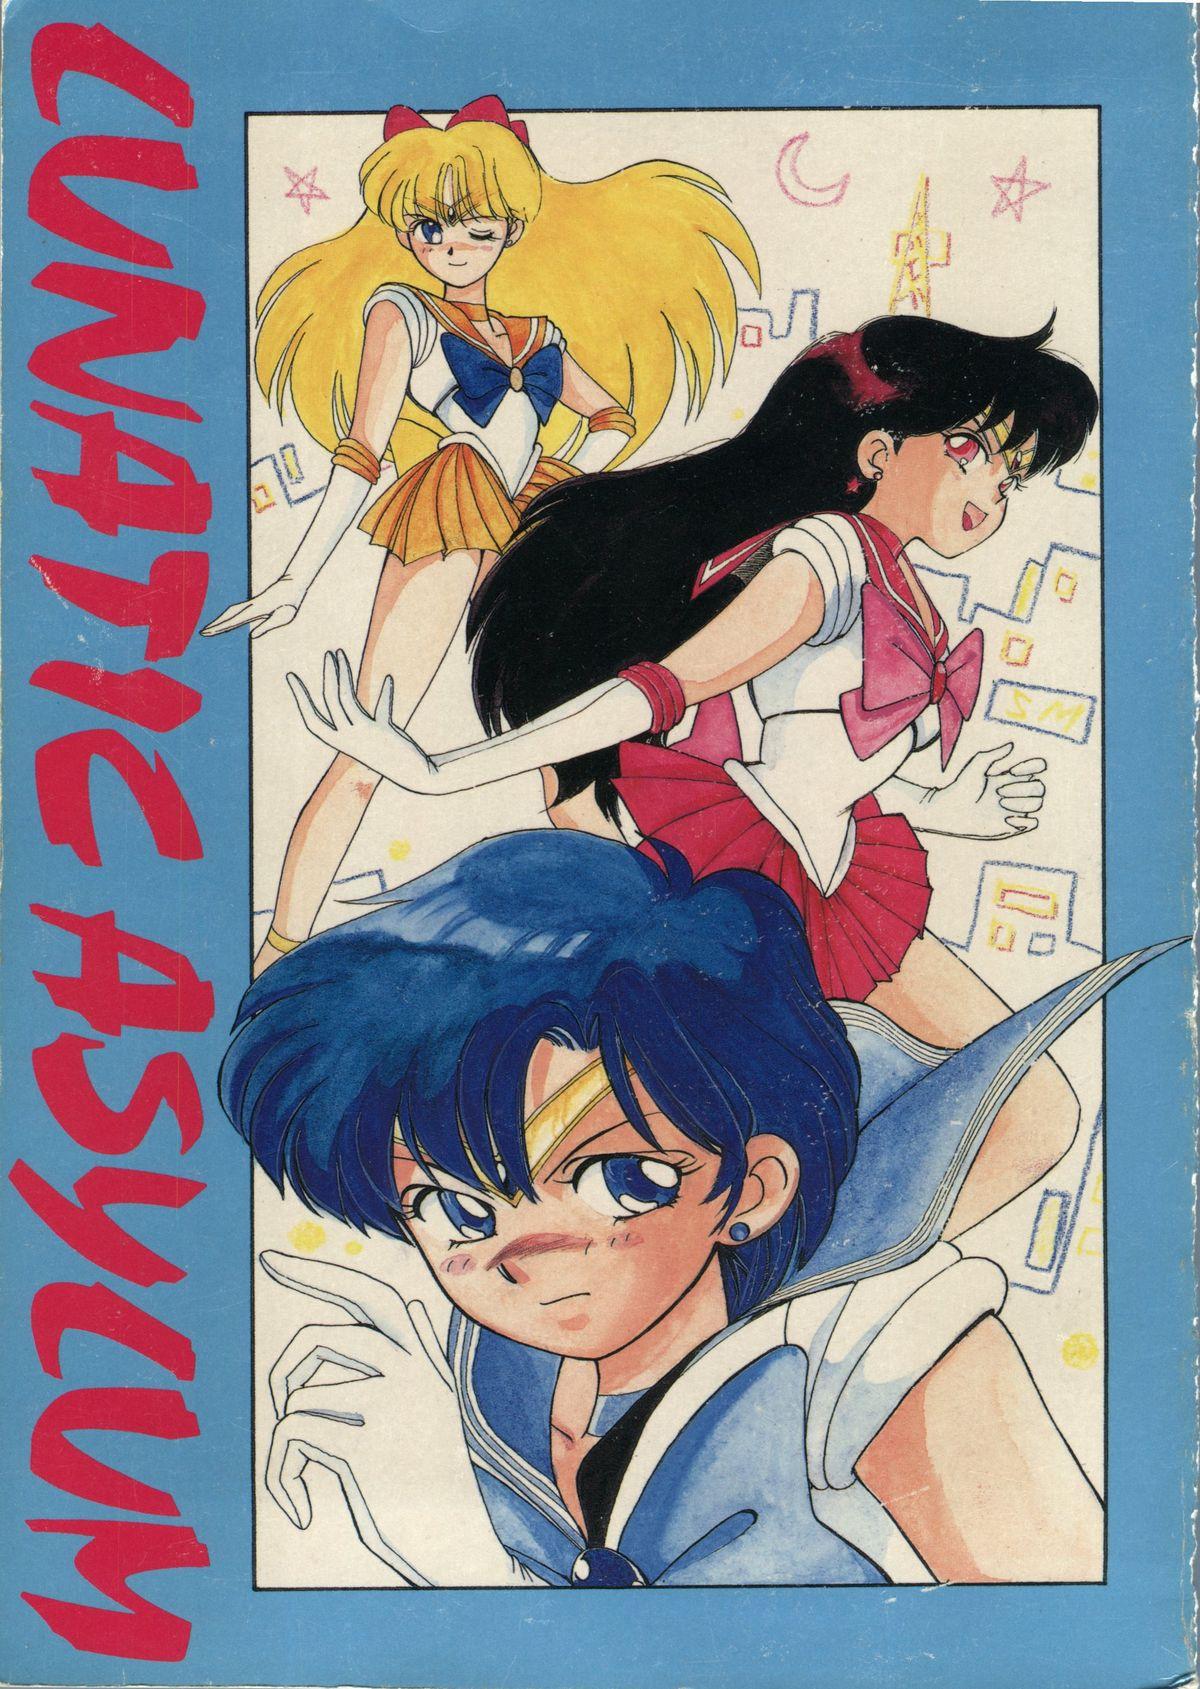 Pure 18 LUNATIC ASYLUM - Sailor moon Lesbians - Picture 1